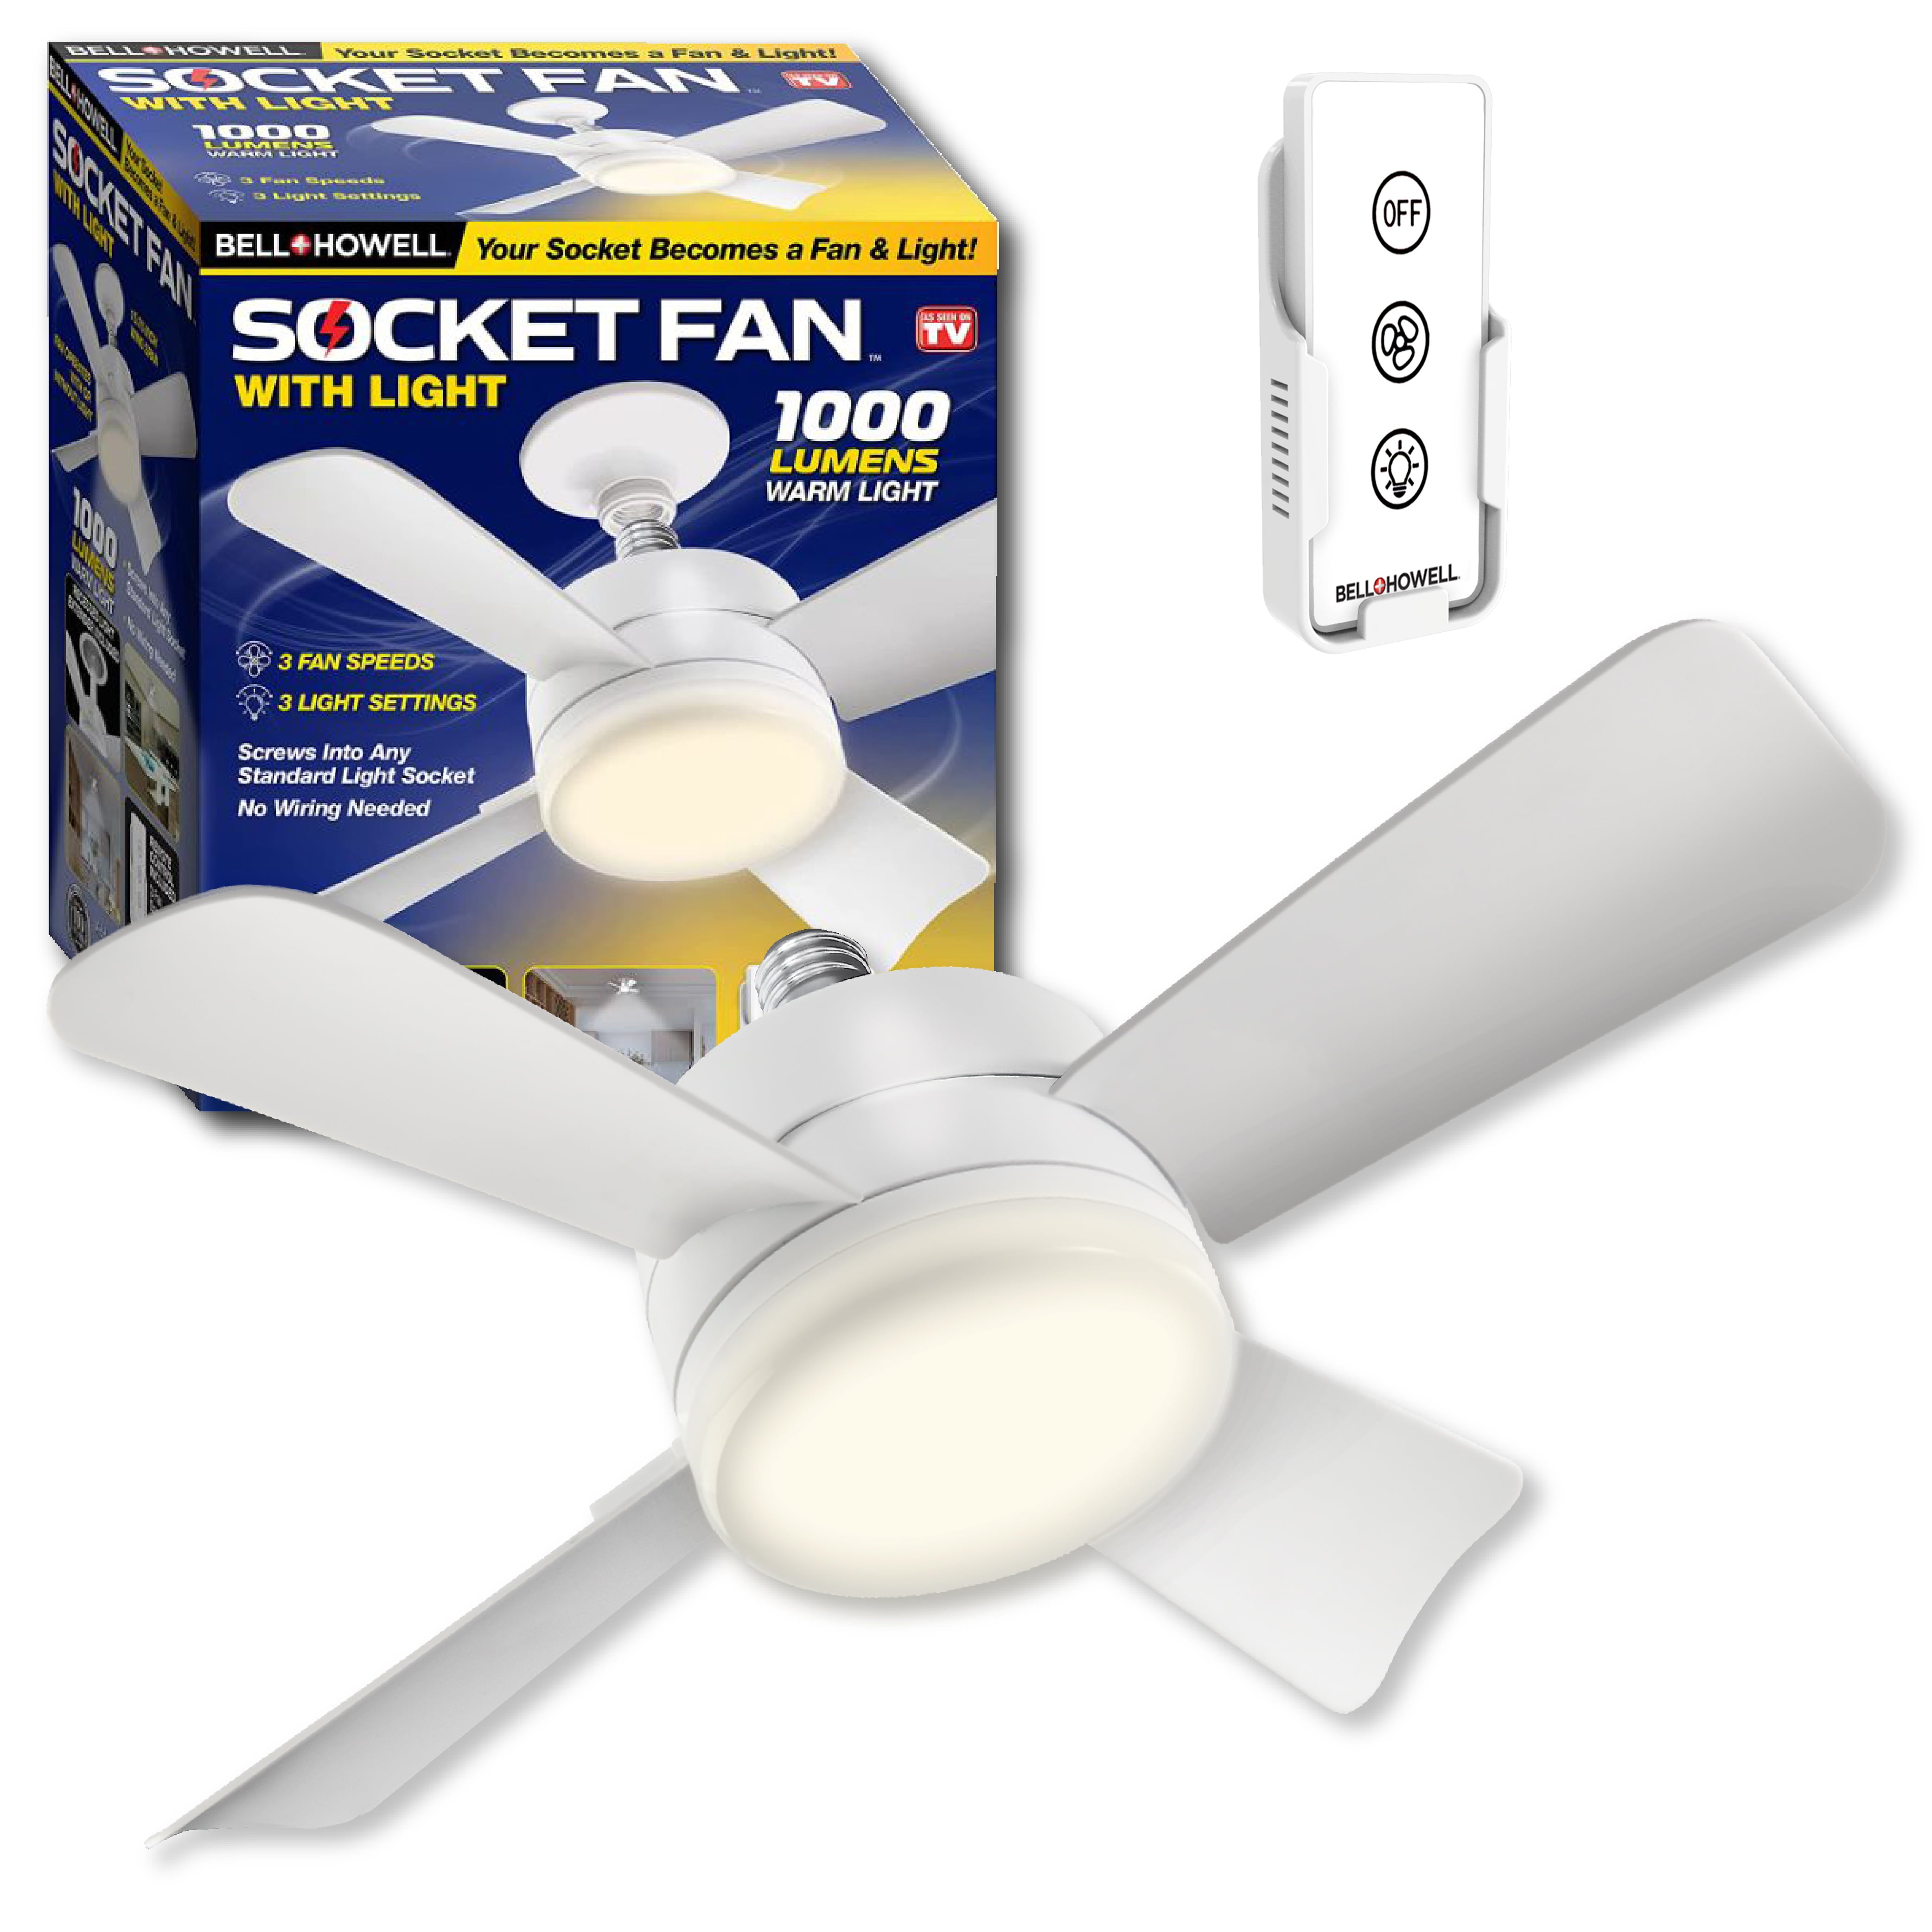 Socket Fan Ceiling Fan with Light Adjustable Ceiling Light 1000 Lumens As Seen On TV